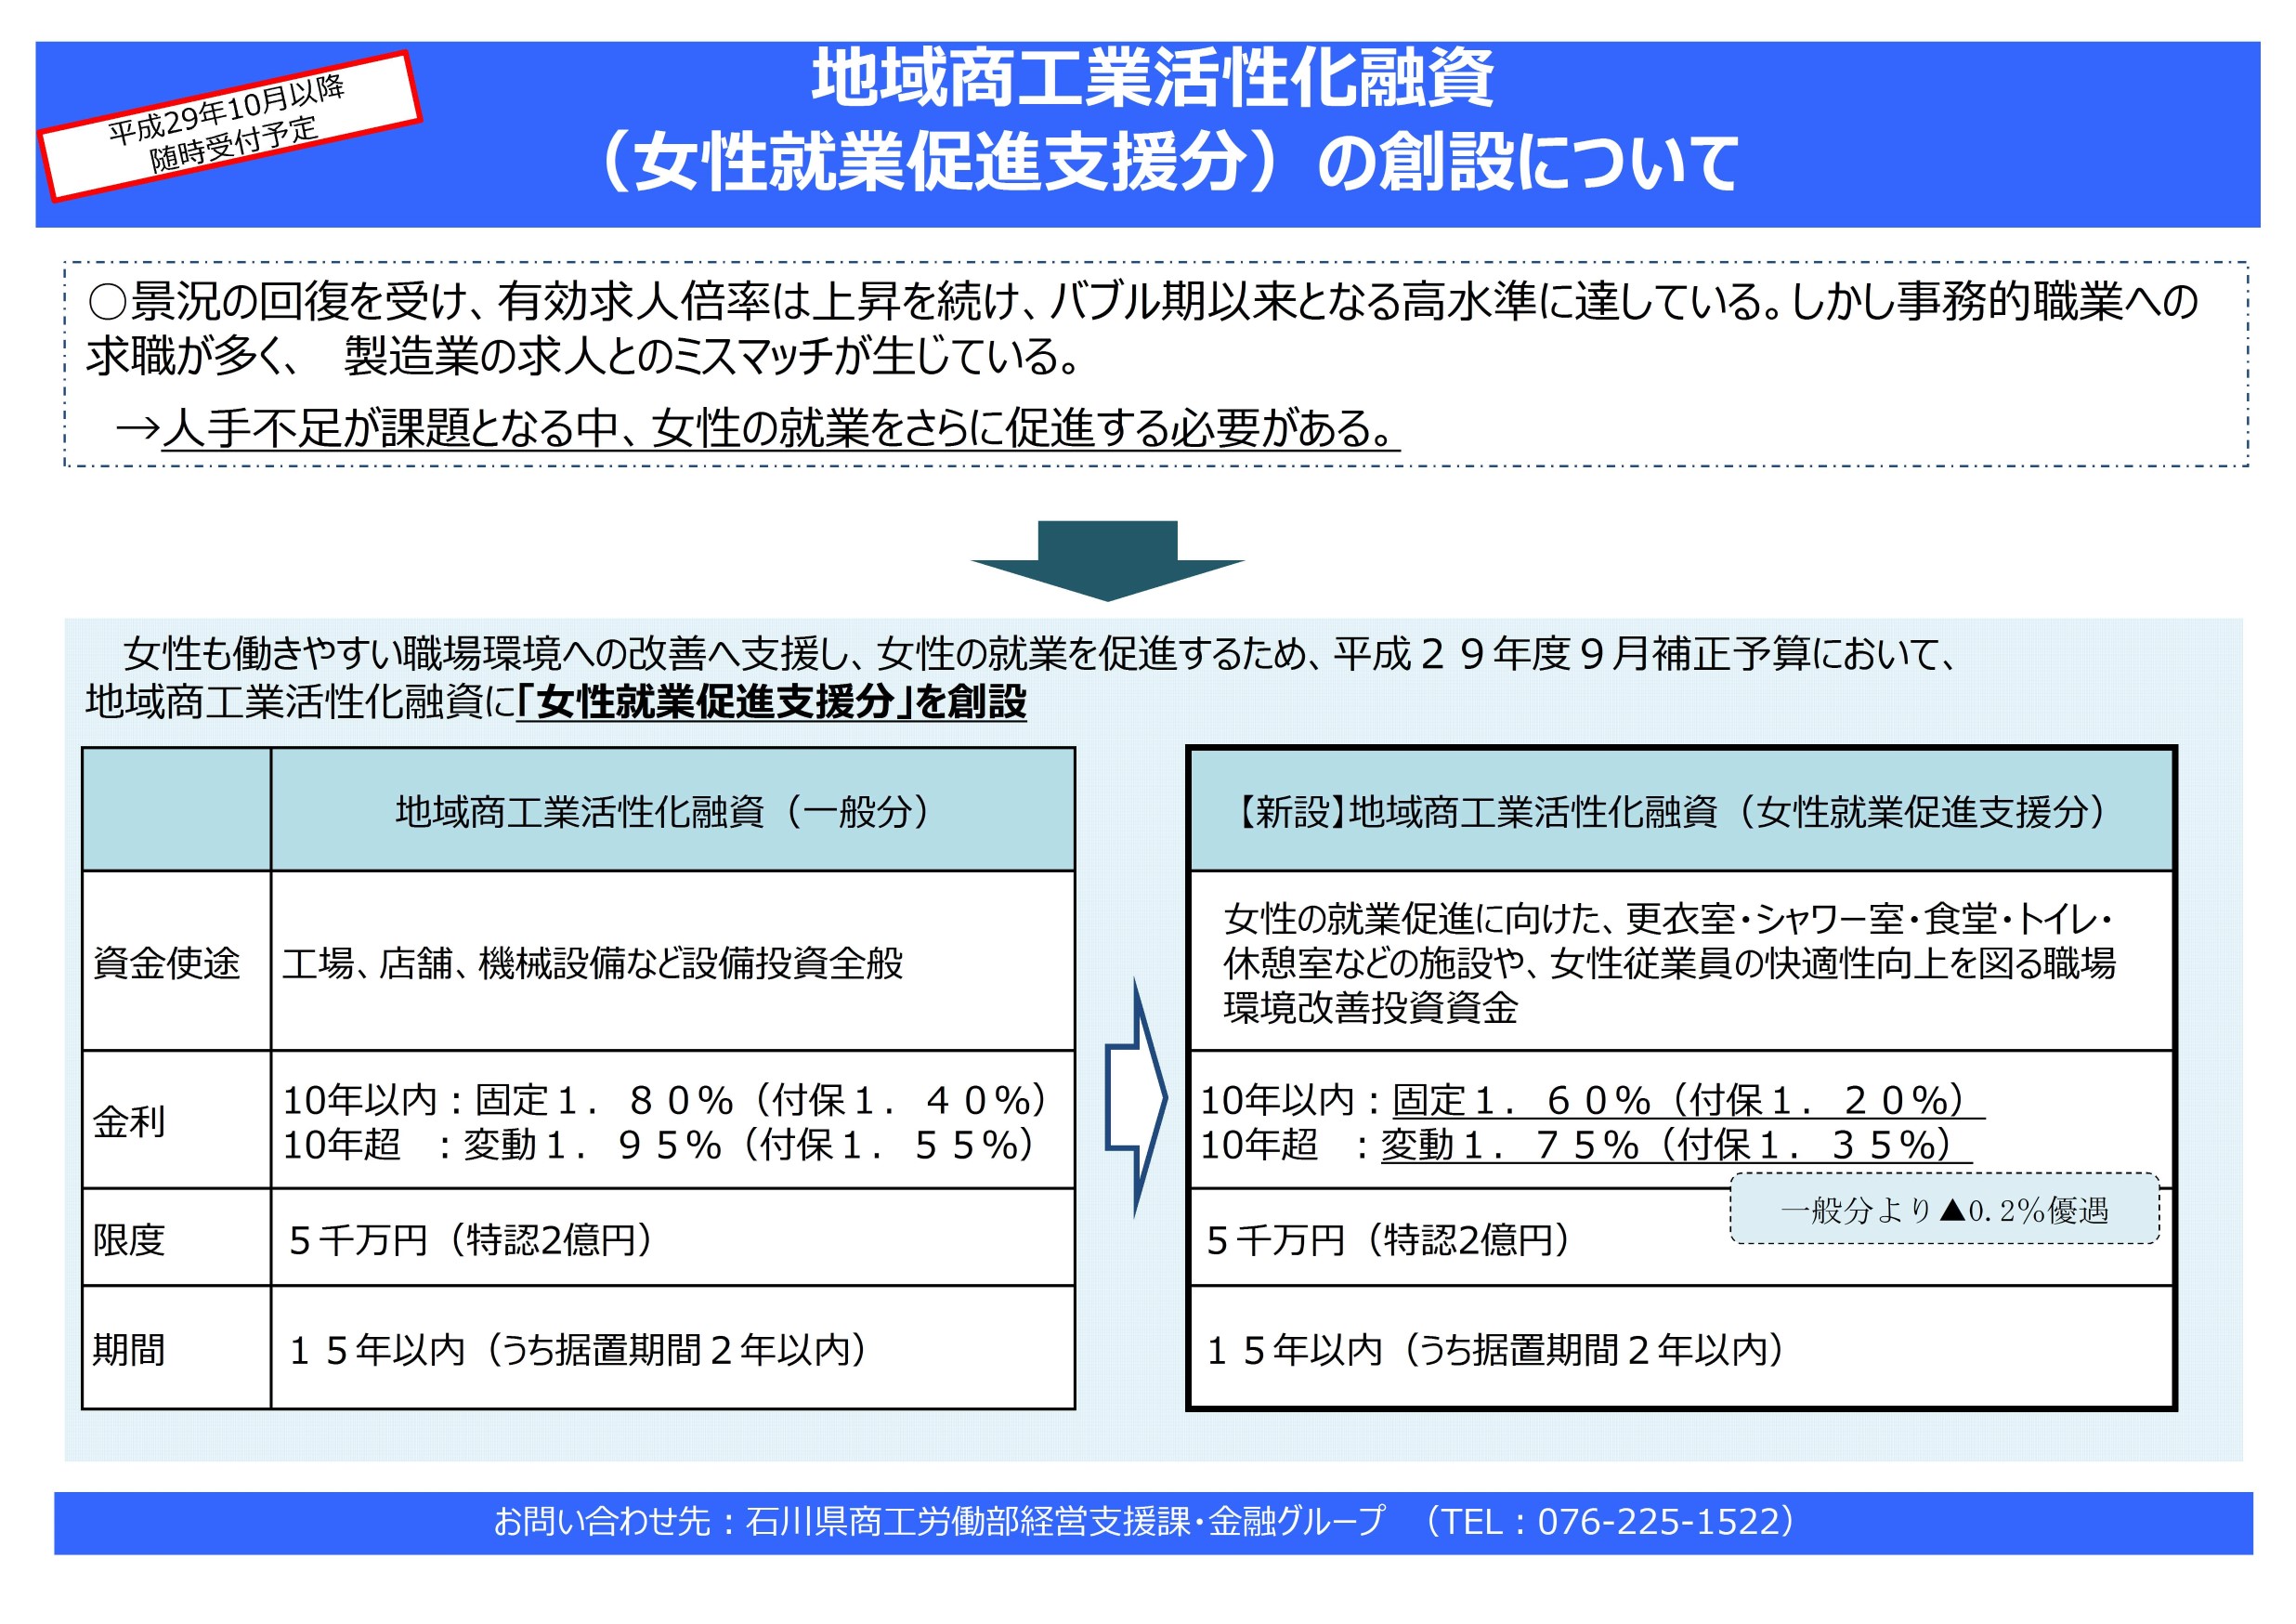 地域商工業活性化融資（女性就業促進支援分）-石川県制度融資